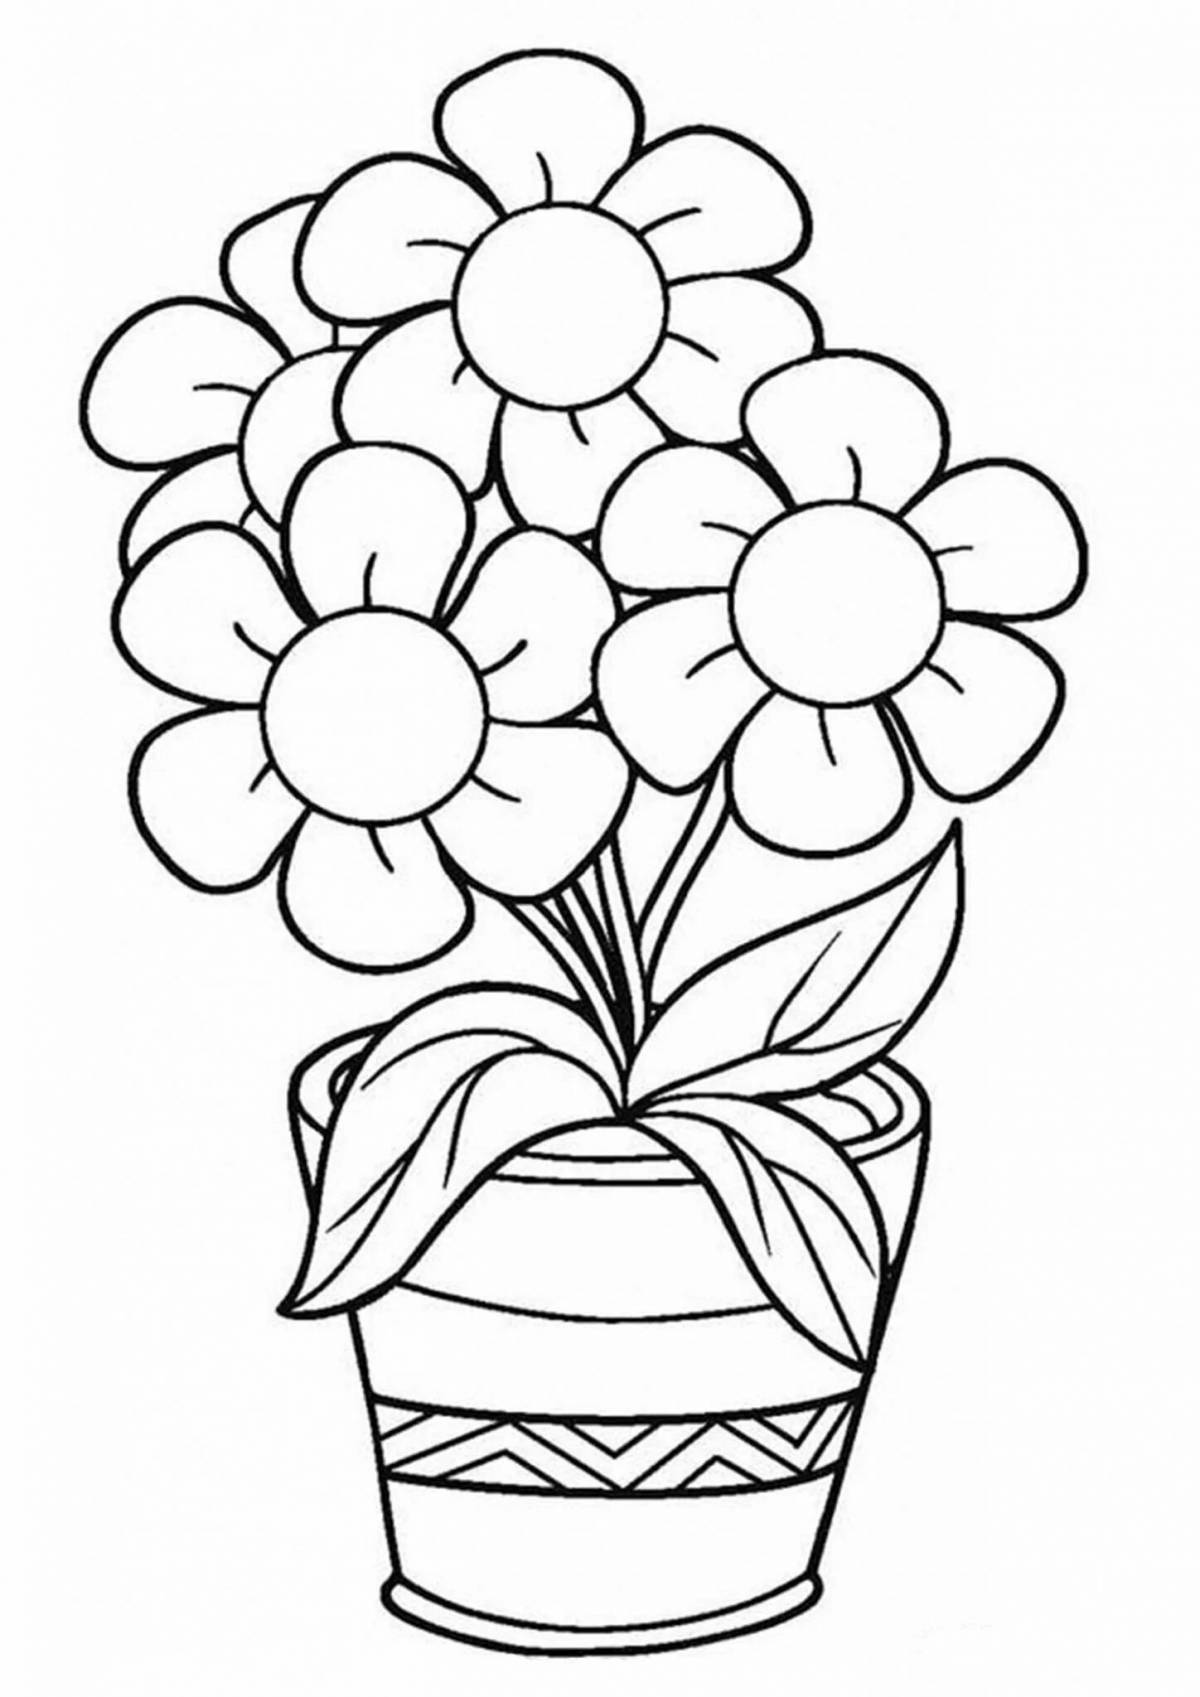 Ecstatic flower vase for children 8-9 years old